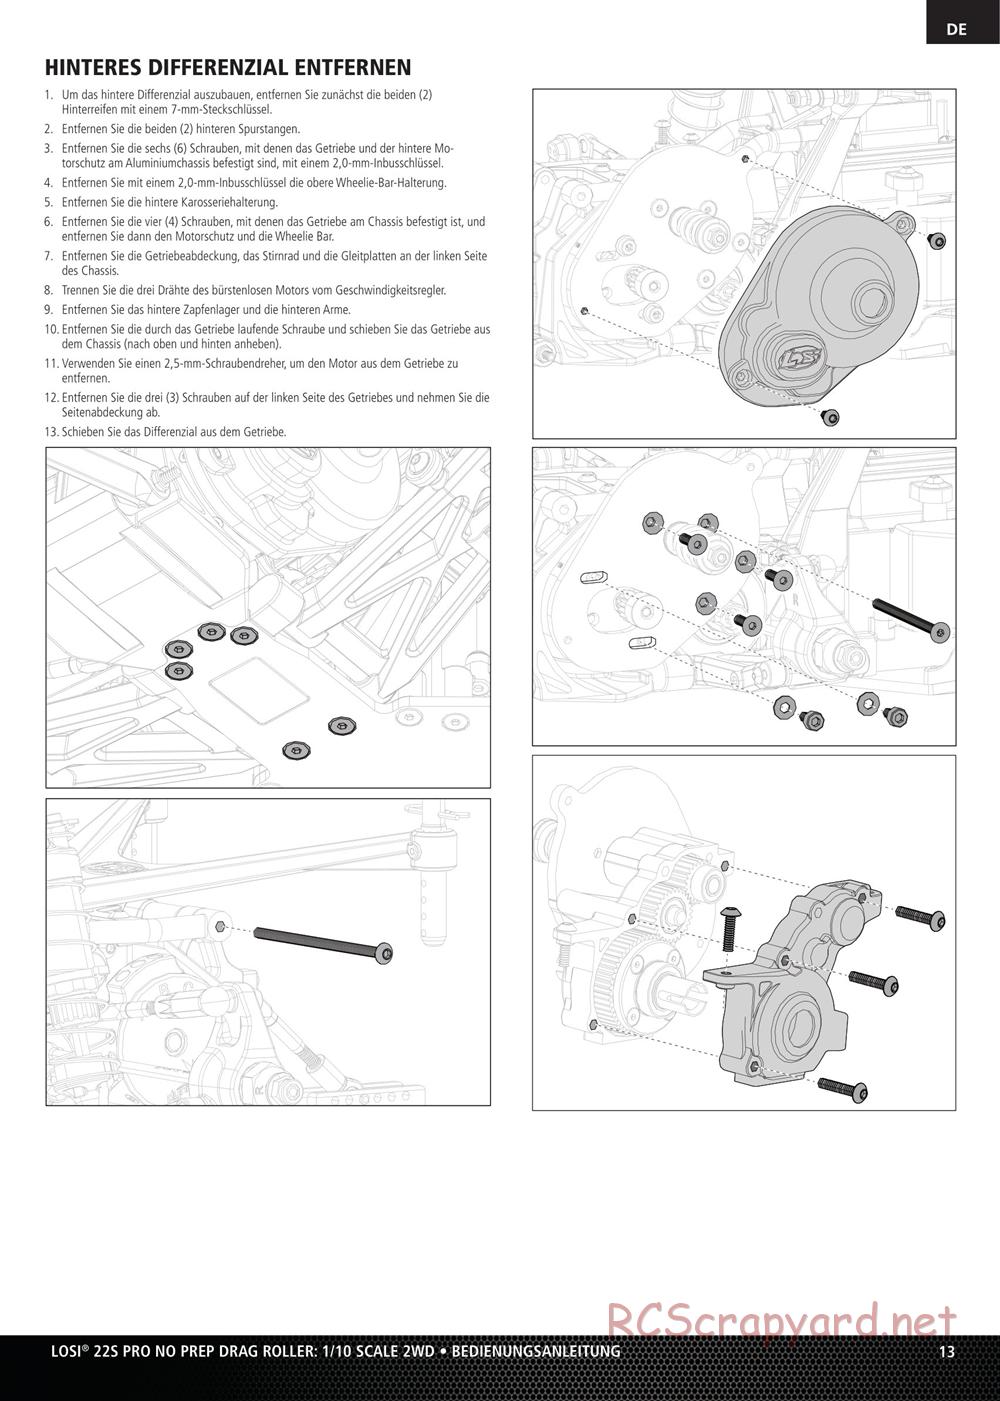 Team Losi - No Prep Drag Roller - Manual - Page 13